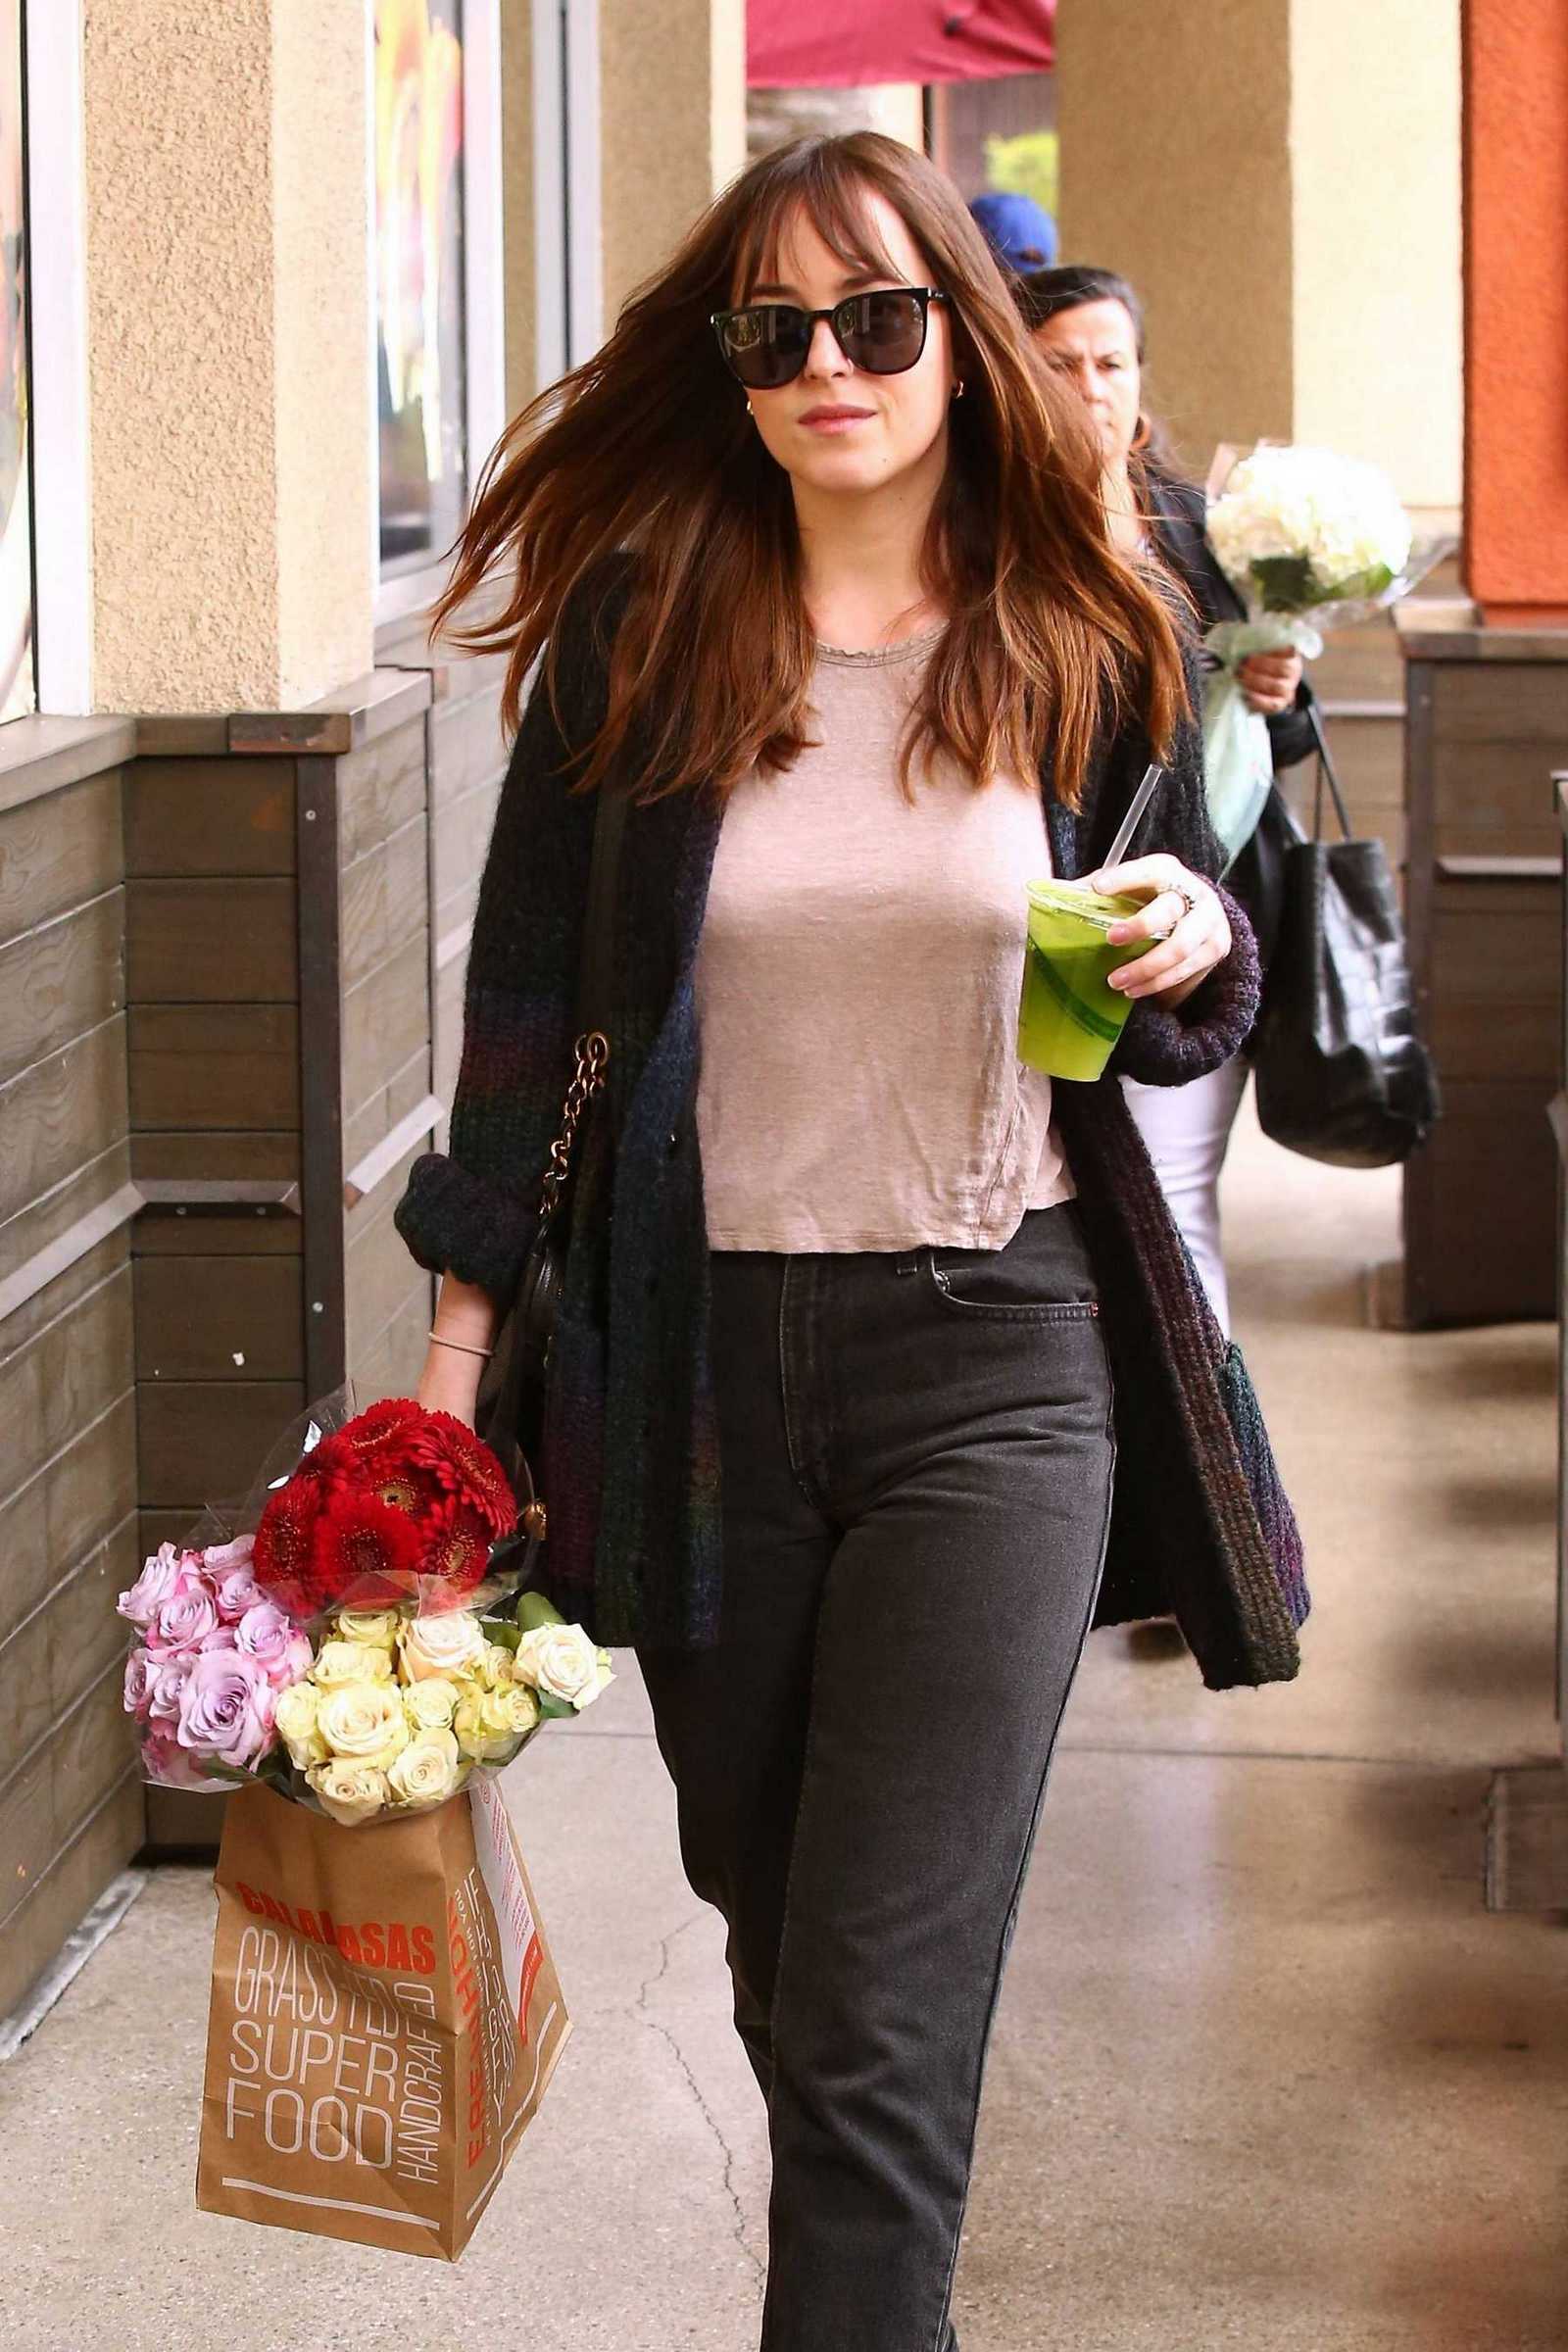 Dakota_Johnson_-_leaving_Erewhon_grocery_store_in_Los_Angeles_on_May_15-01.jpg